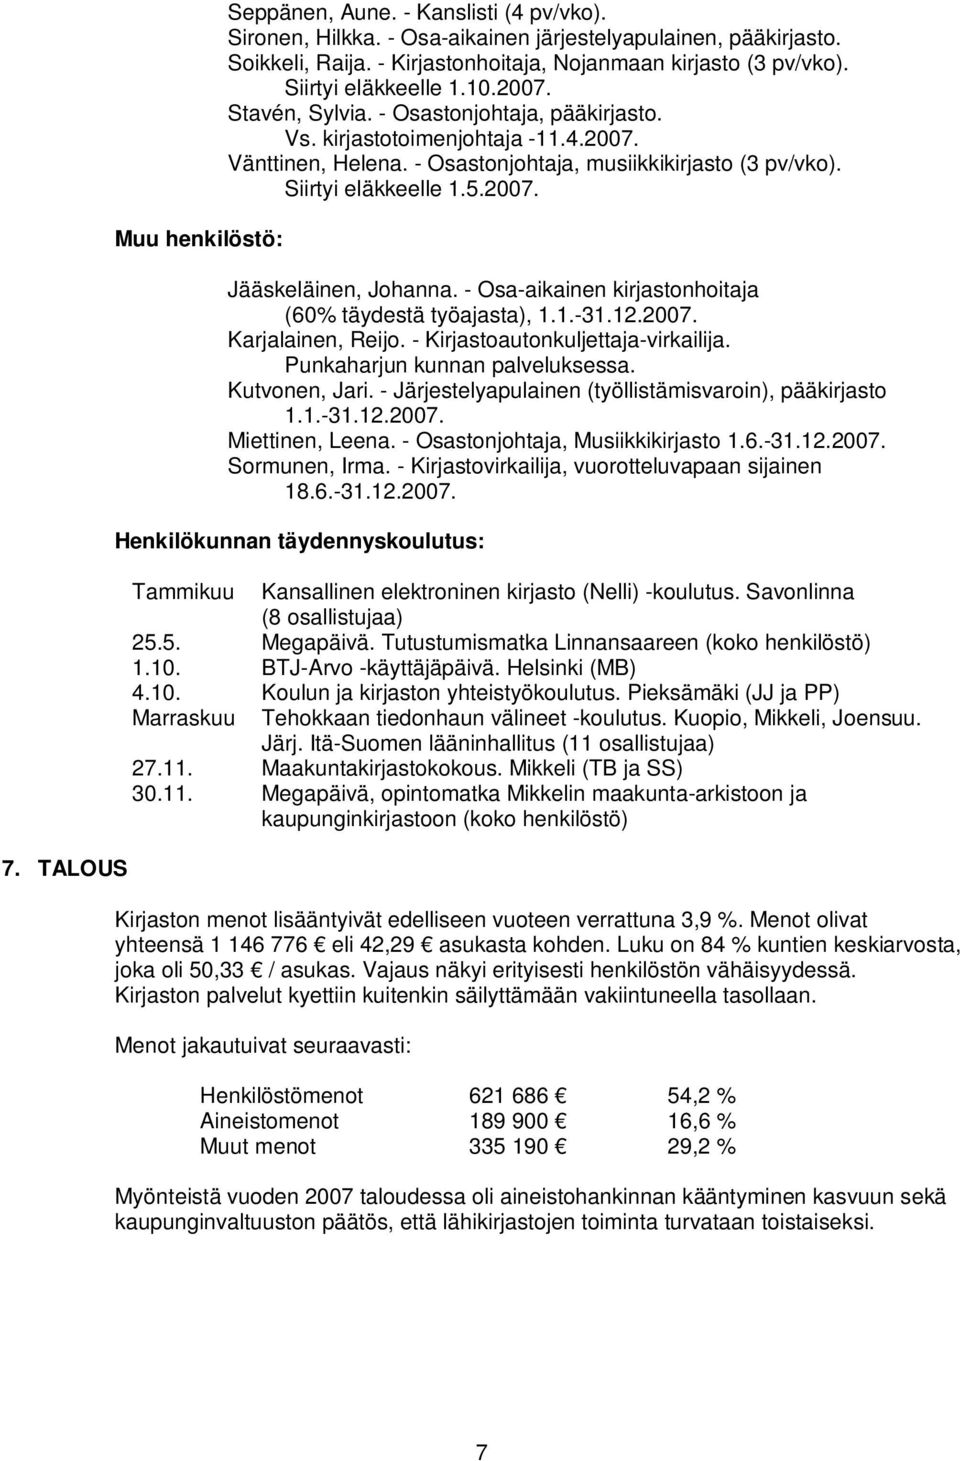 Siirtyi eläkkeelle 1.5.2007. Jääskeläinen, Johanna. - Osa-aikainen kirjastonhoitaja (60% täydestä työajasta), 1.1.-31.12.2007. Karjalainen, Reijo. - Kirjastoautonkuljettaja-virkailija.